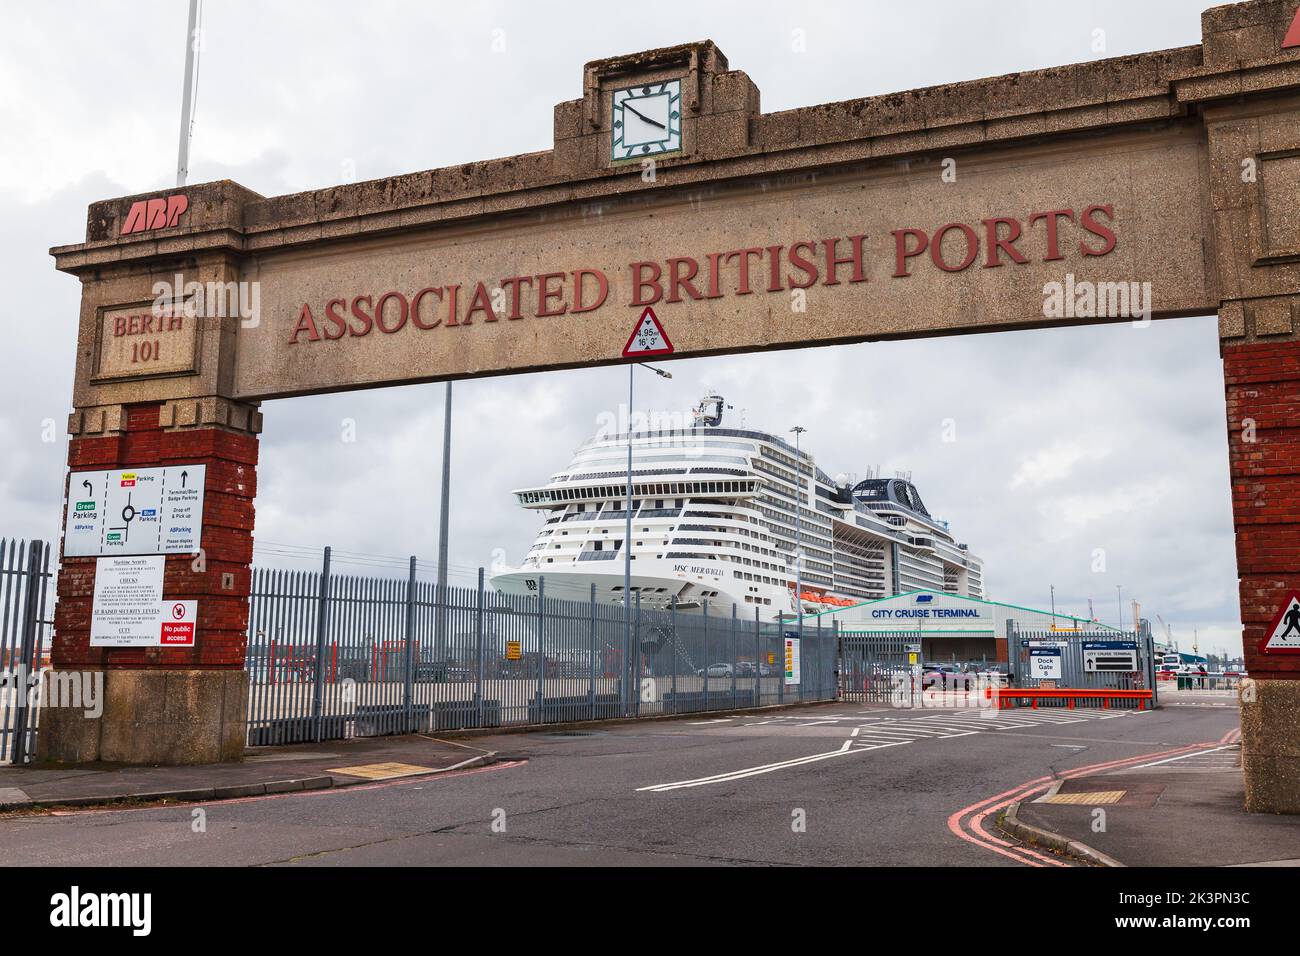 Southampton, Regno Unito - 24 aprile 2019: Porta dei porti britannici associati. La nave da crociera MSC Meraviglia è ormeggiata nel porto di Southampton all'ormeggio Foto Stock